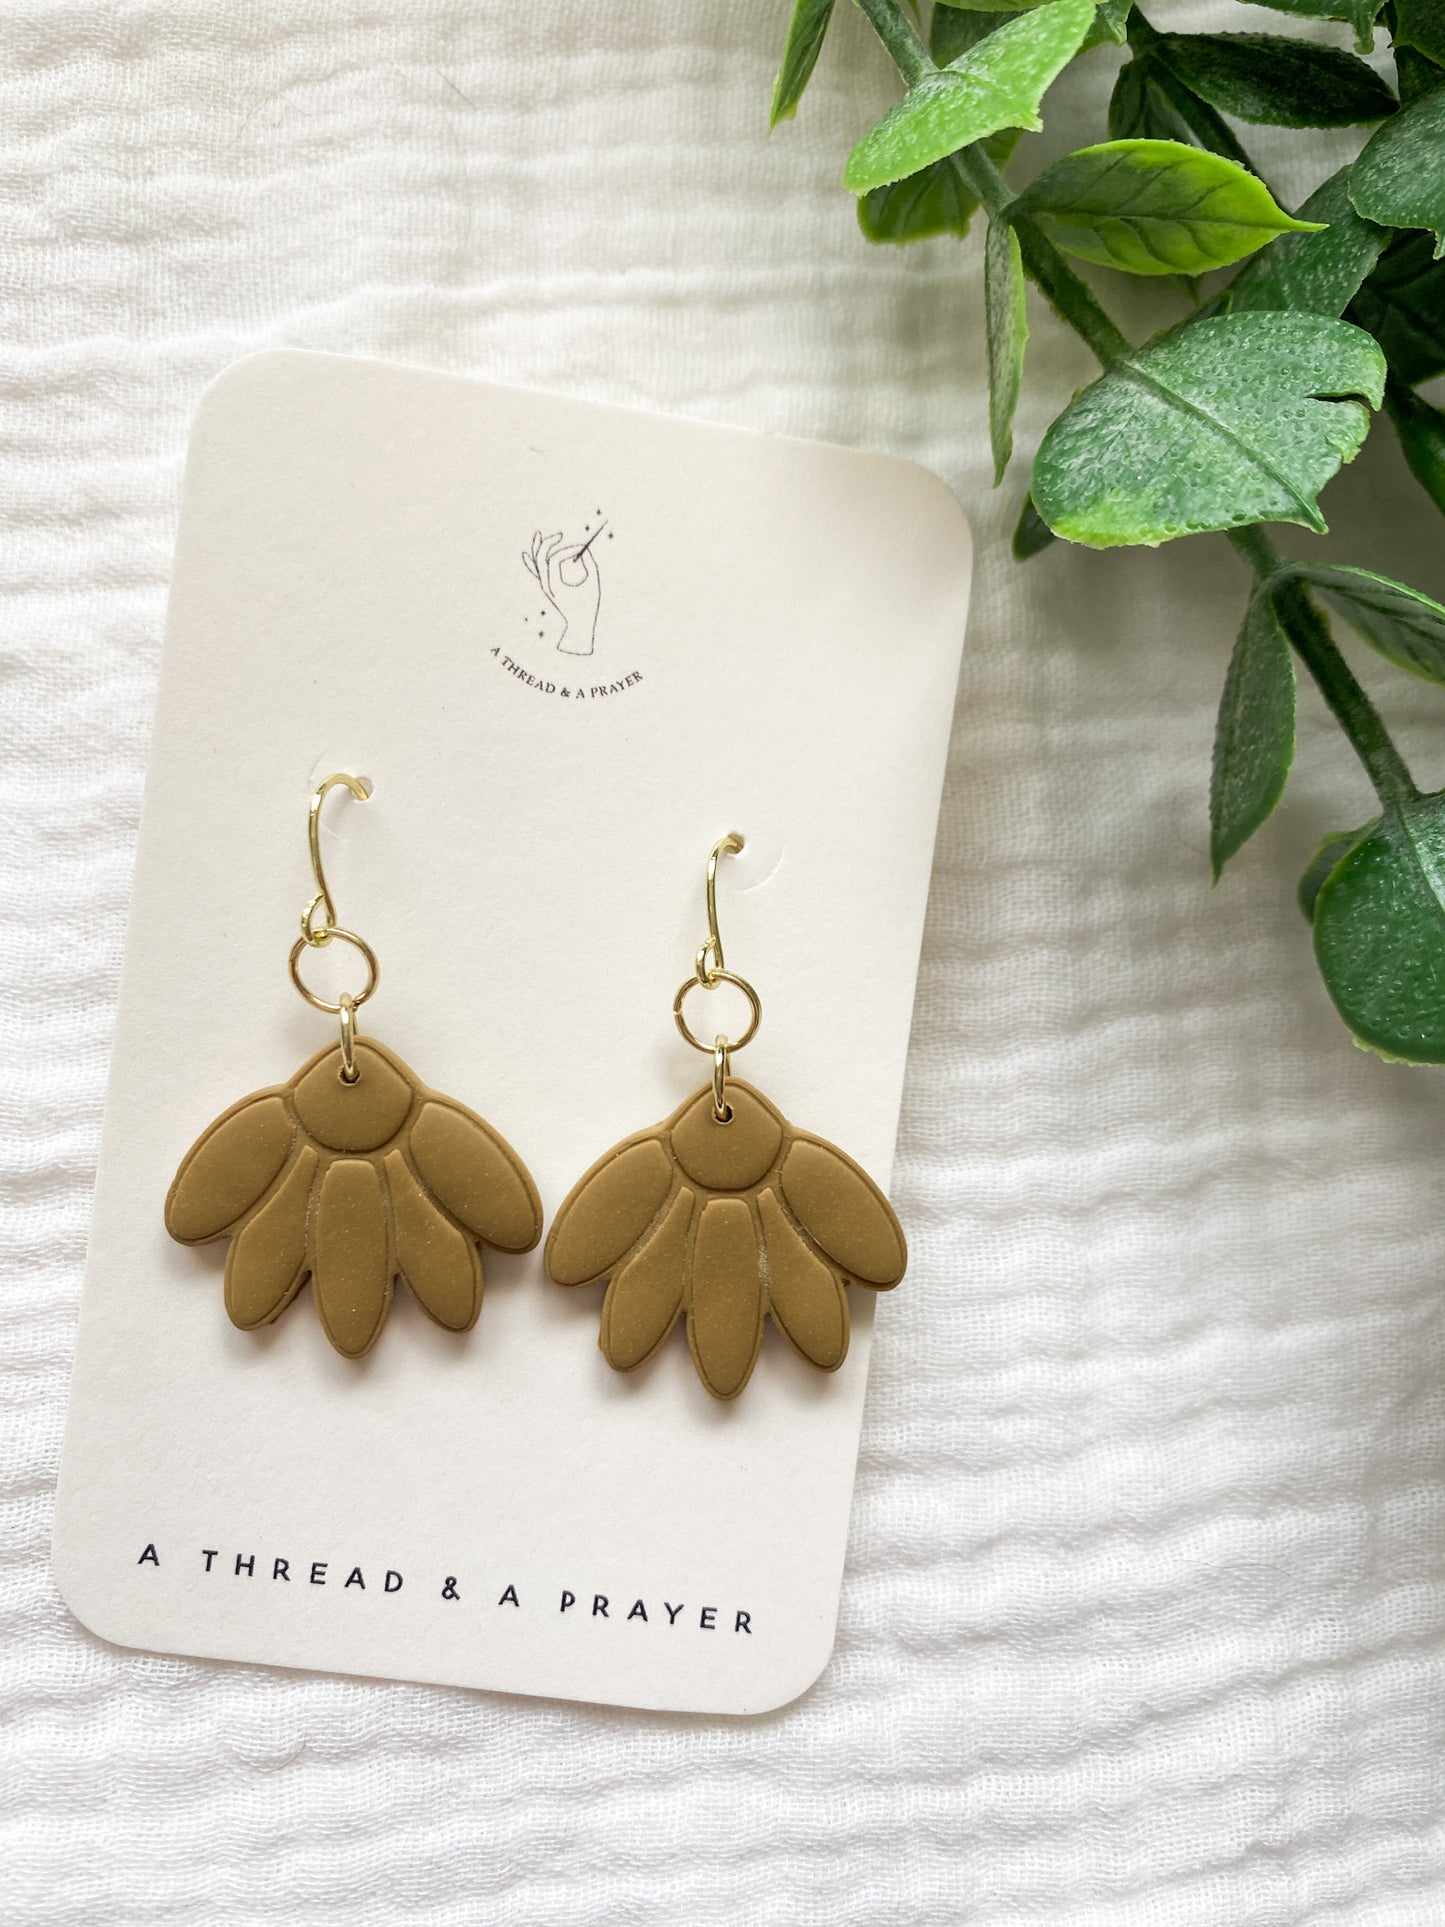 Cute Stamped Flower Earrings | Dainty Mustard Colored Earrings | Lightweight